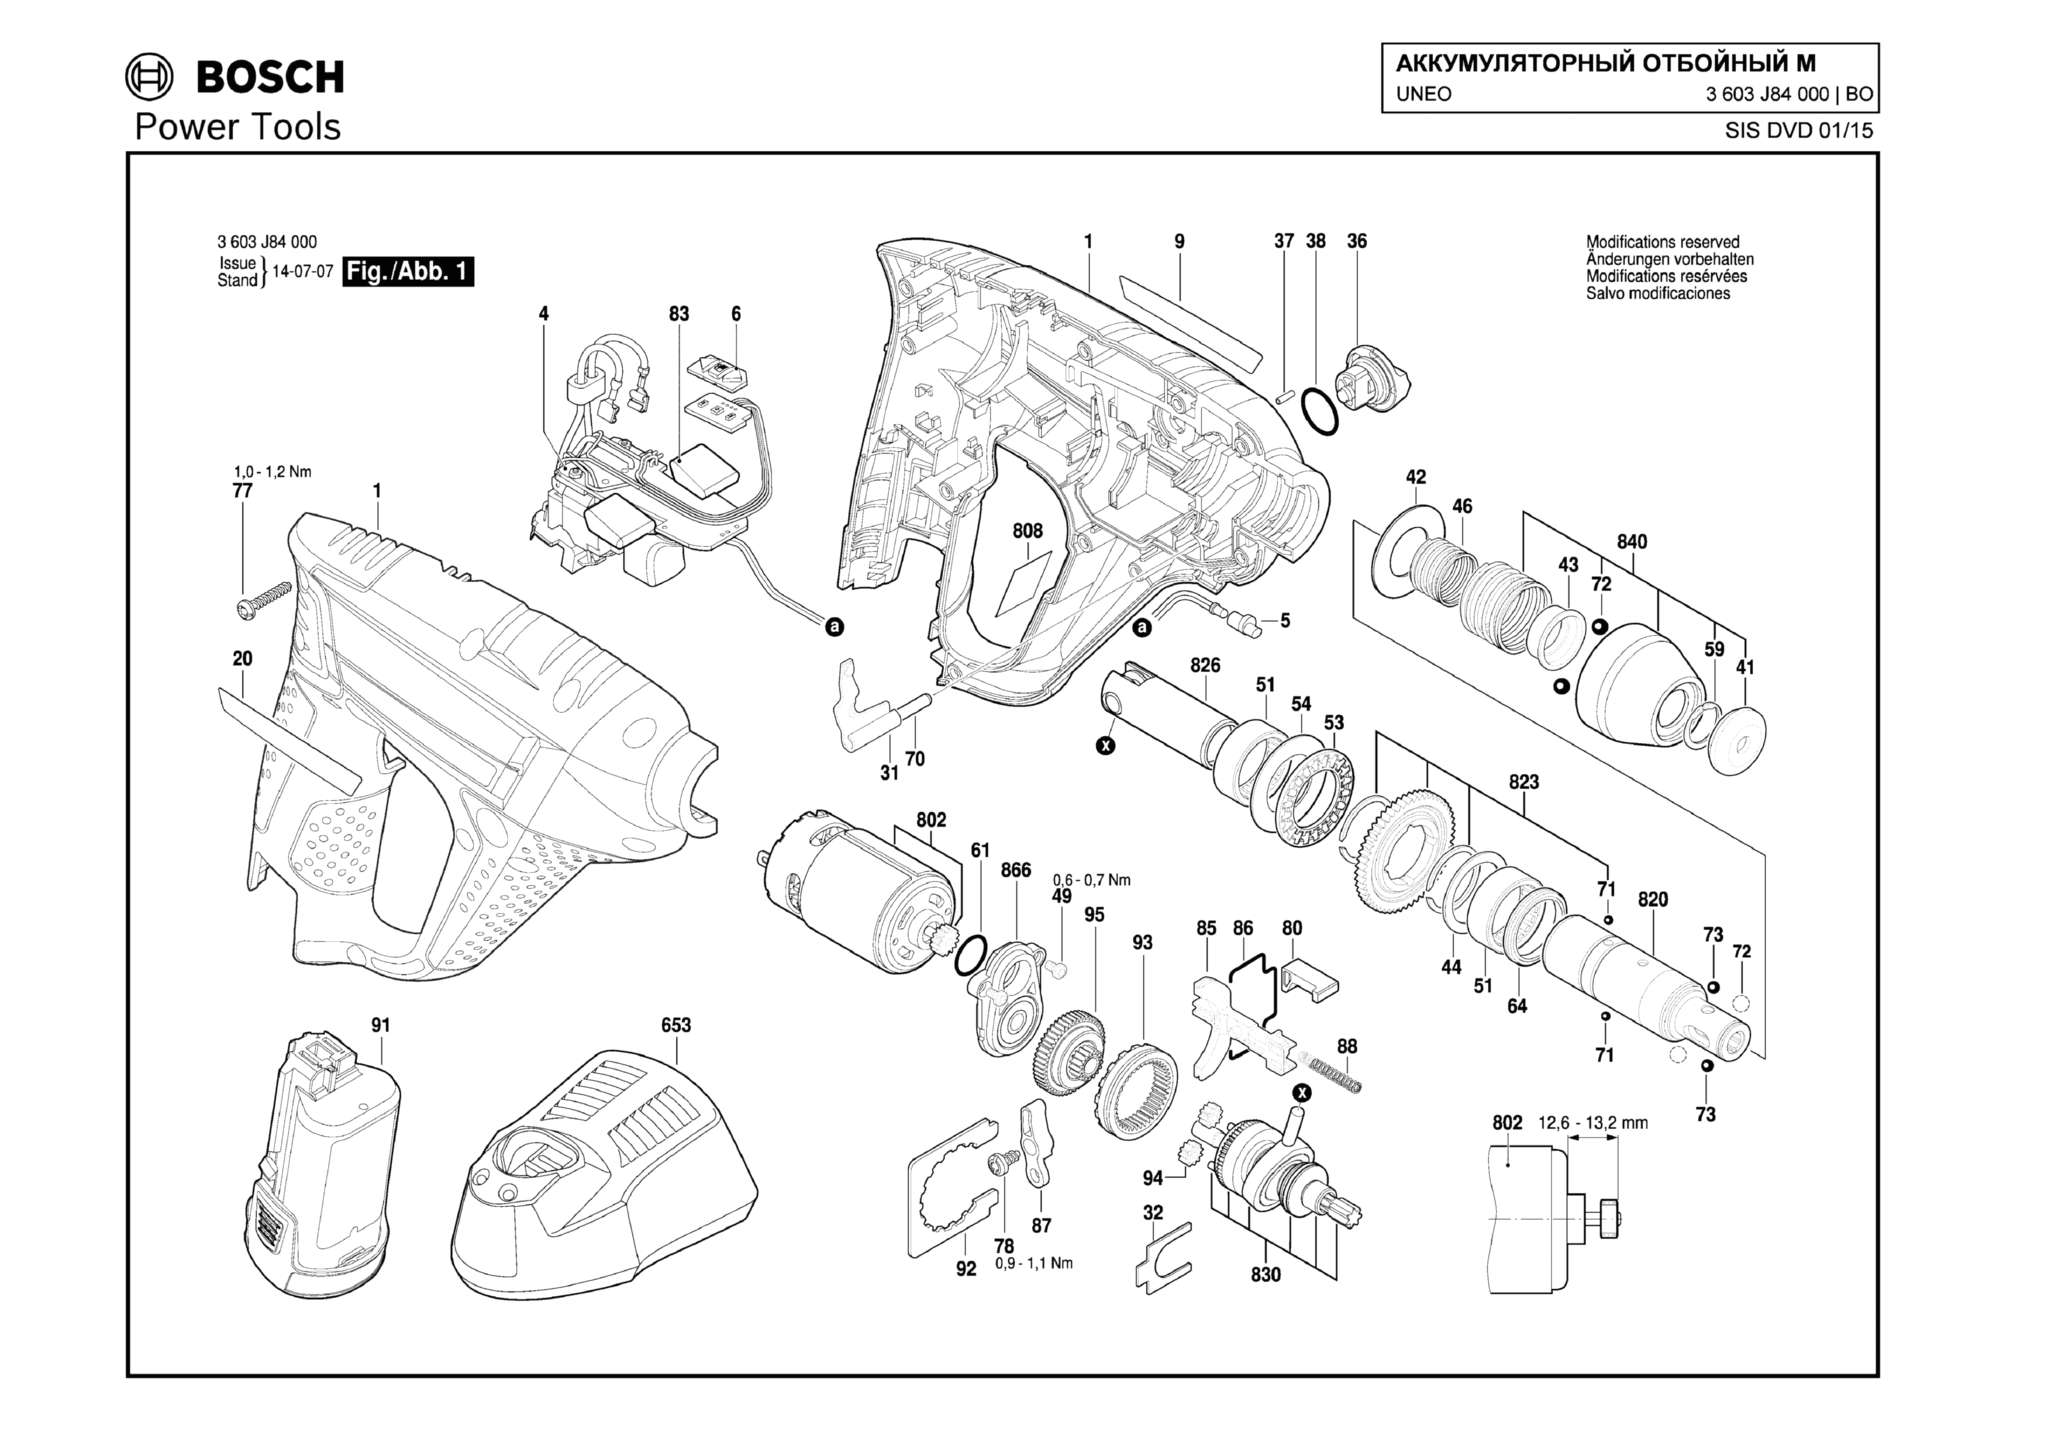 Запчасти, схема и деталировка Bosch UNEO (ТИП 3603J84000)